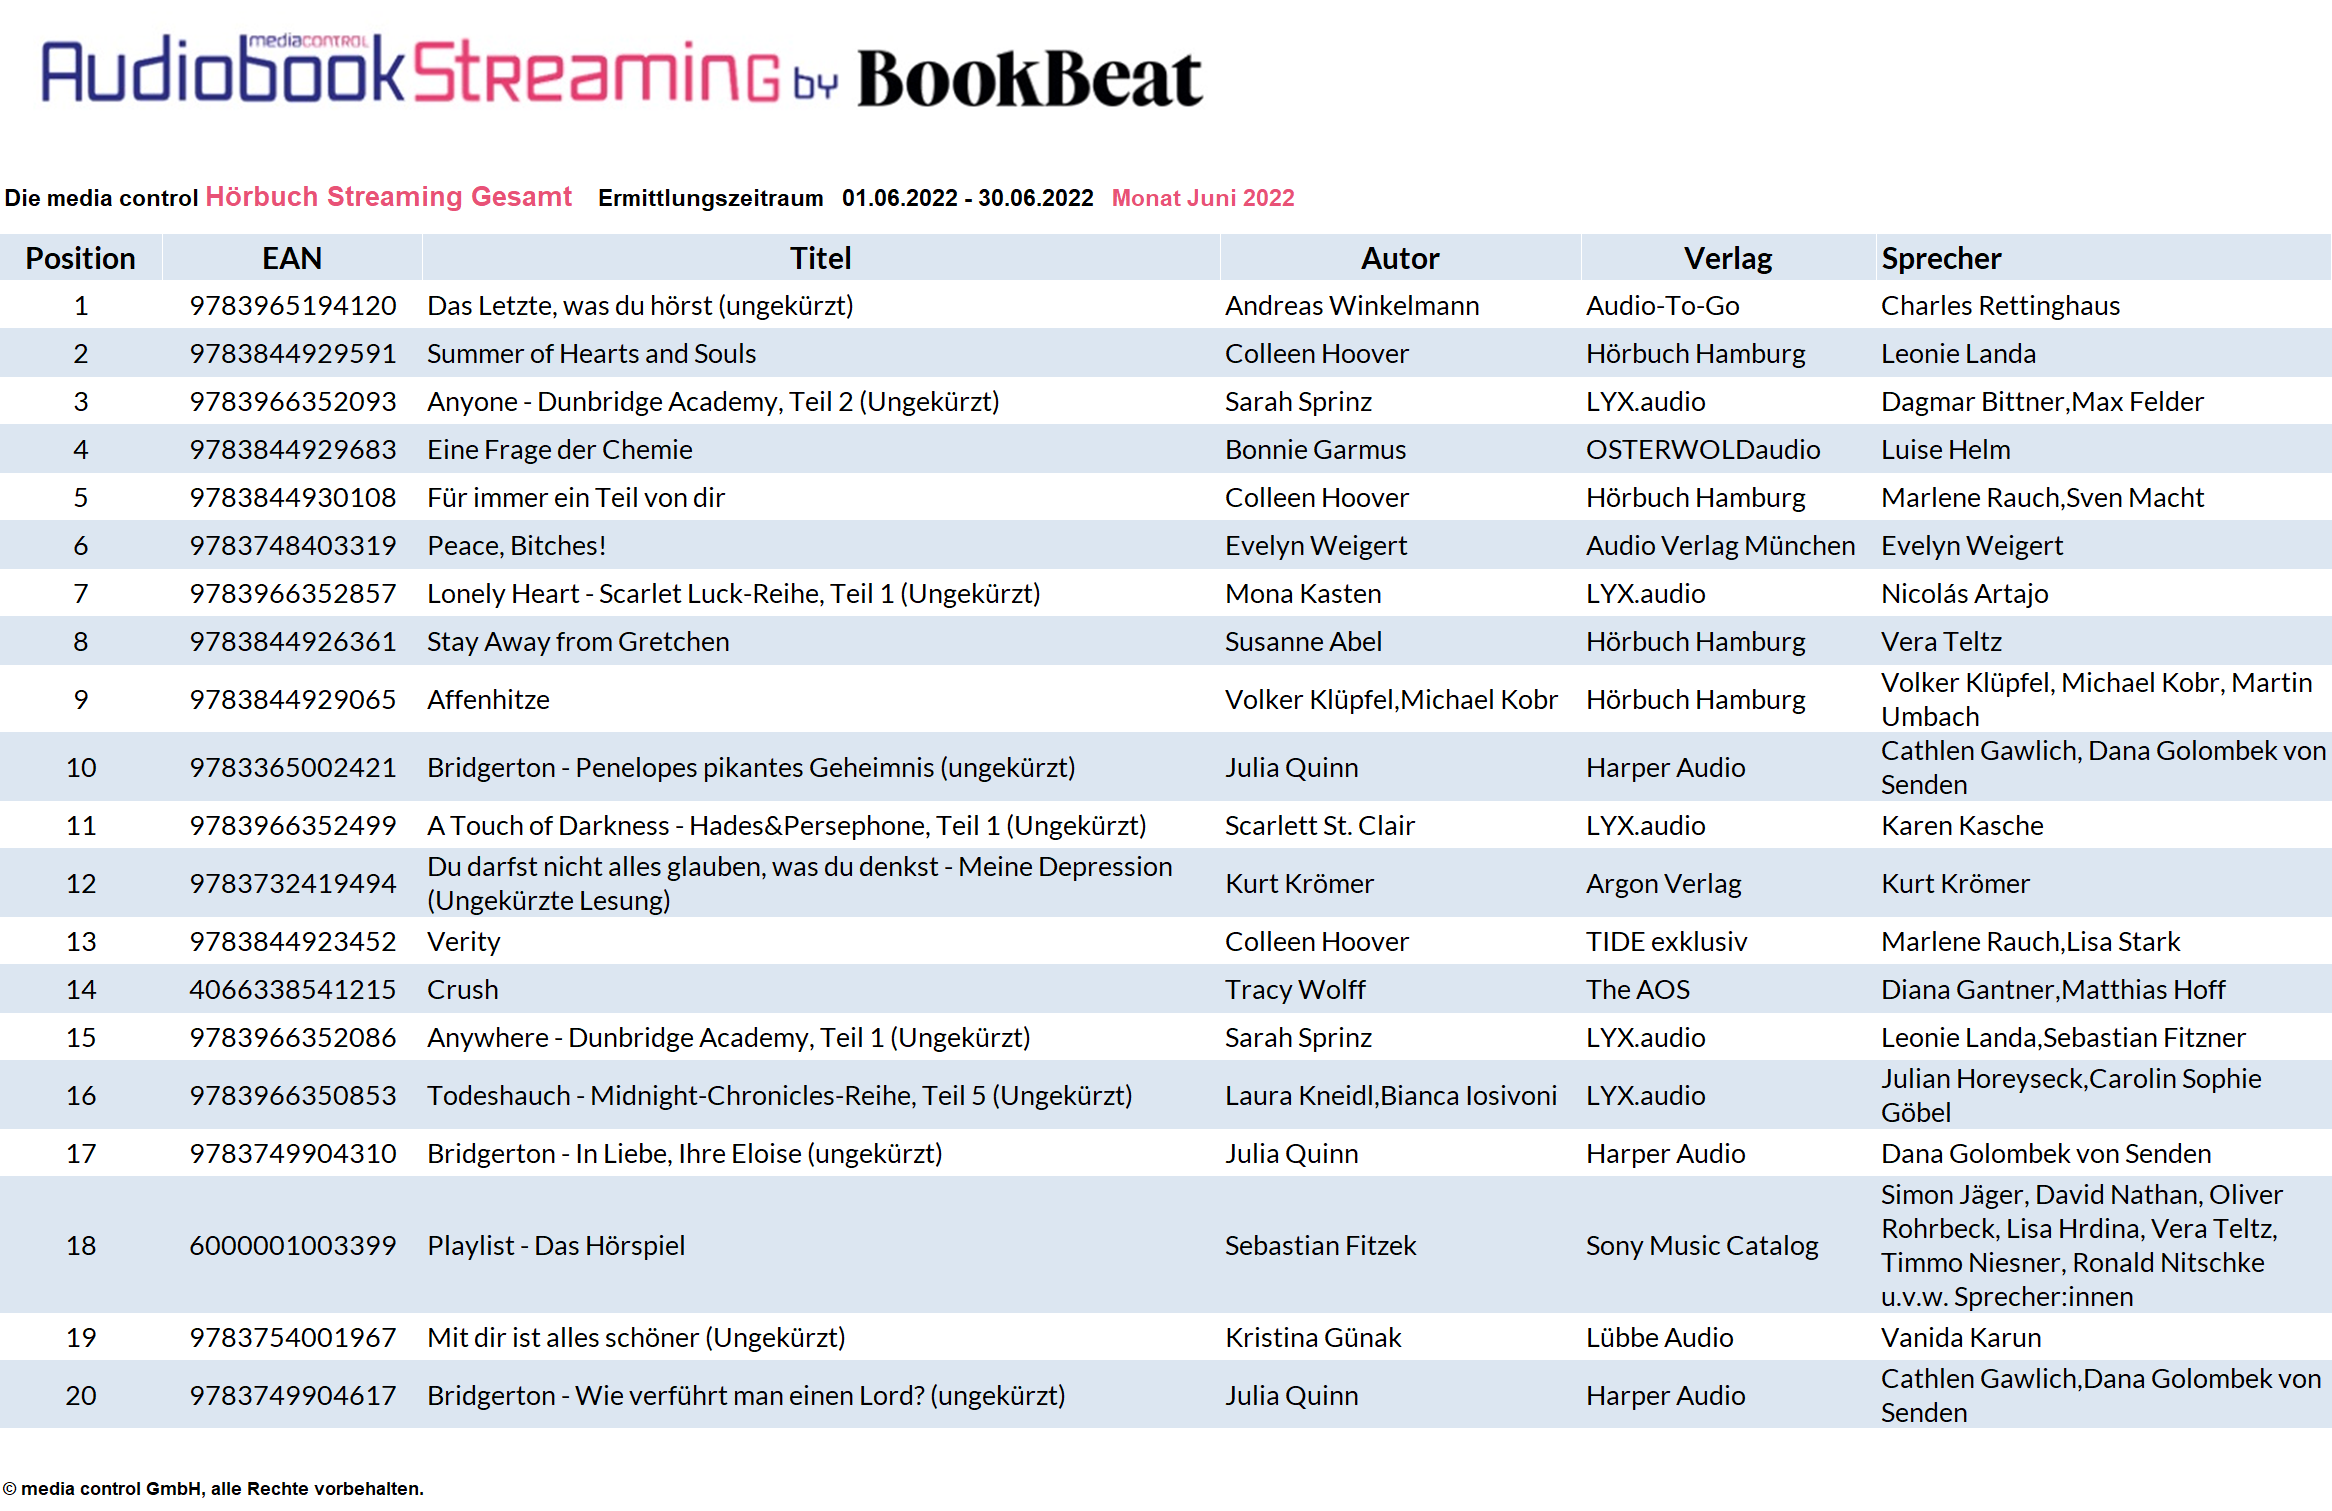 Das sind die BookBeat Hörbuch-Streaming-Charts im Juni 2022 - buchreport